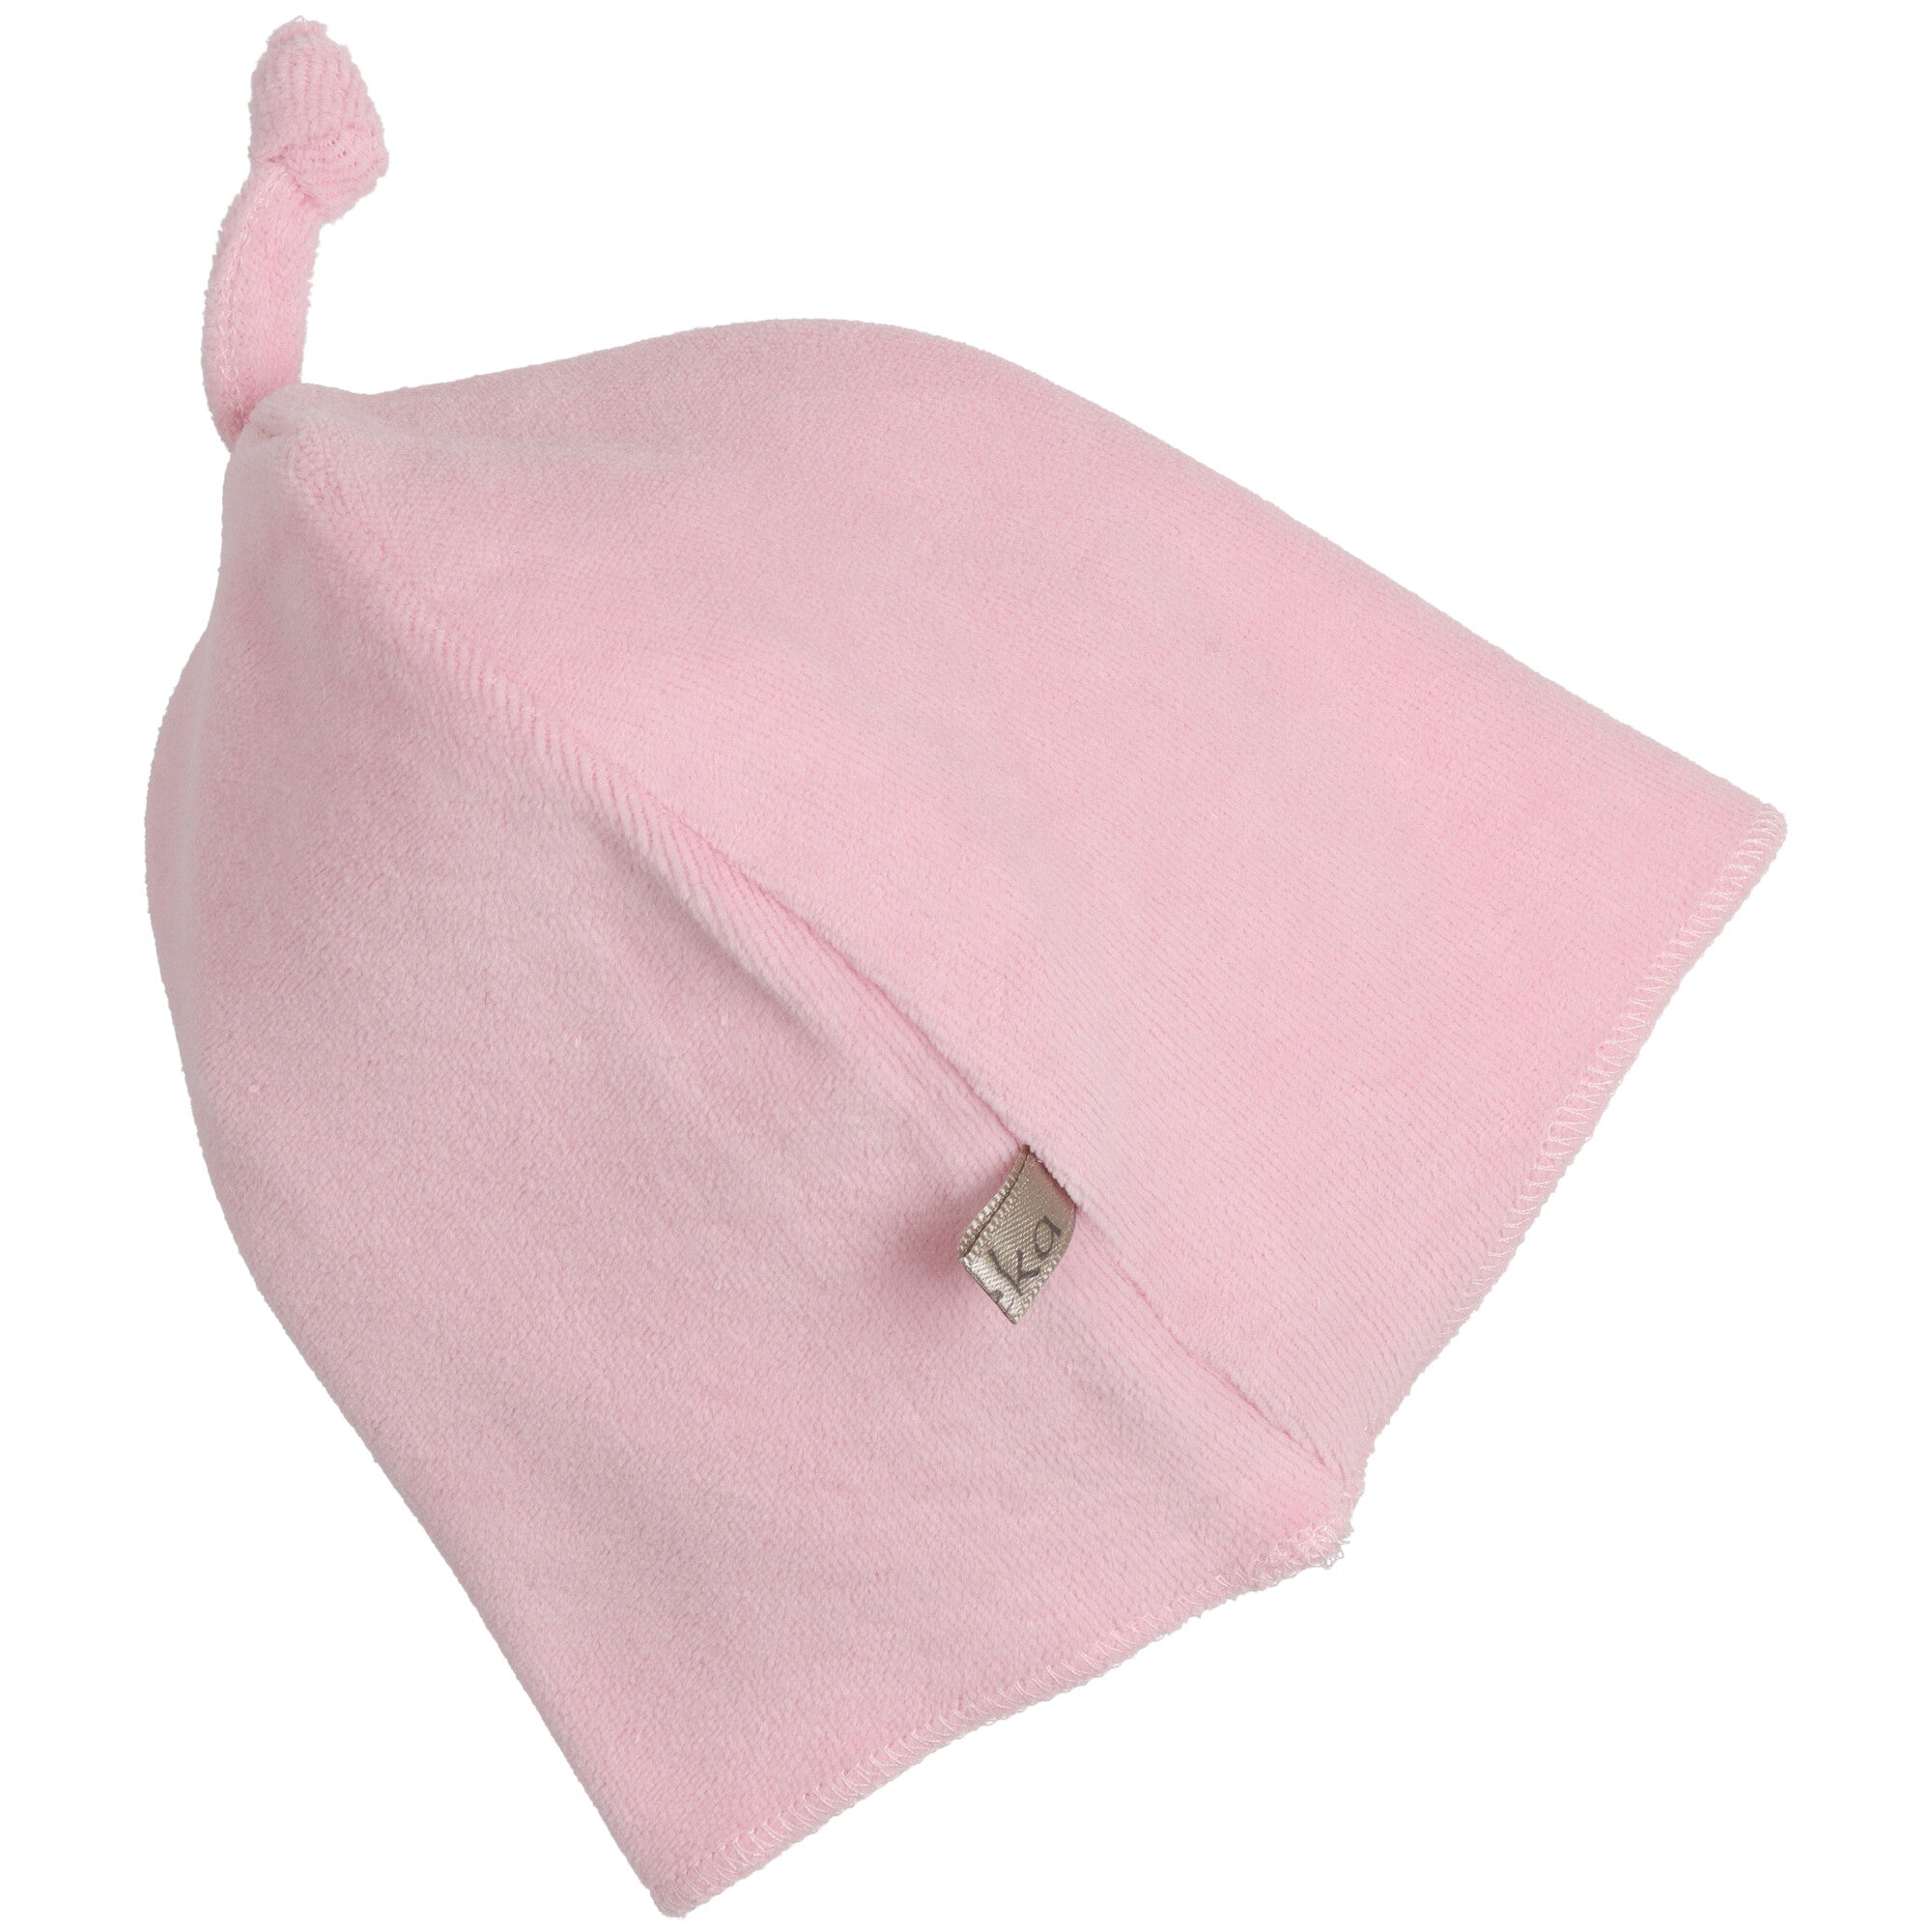 Cappello neonata rosa